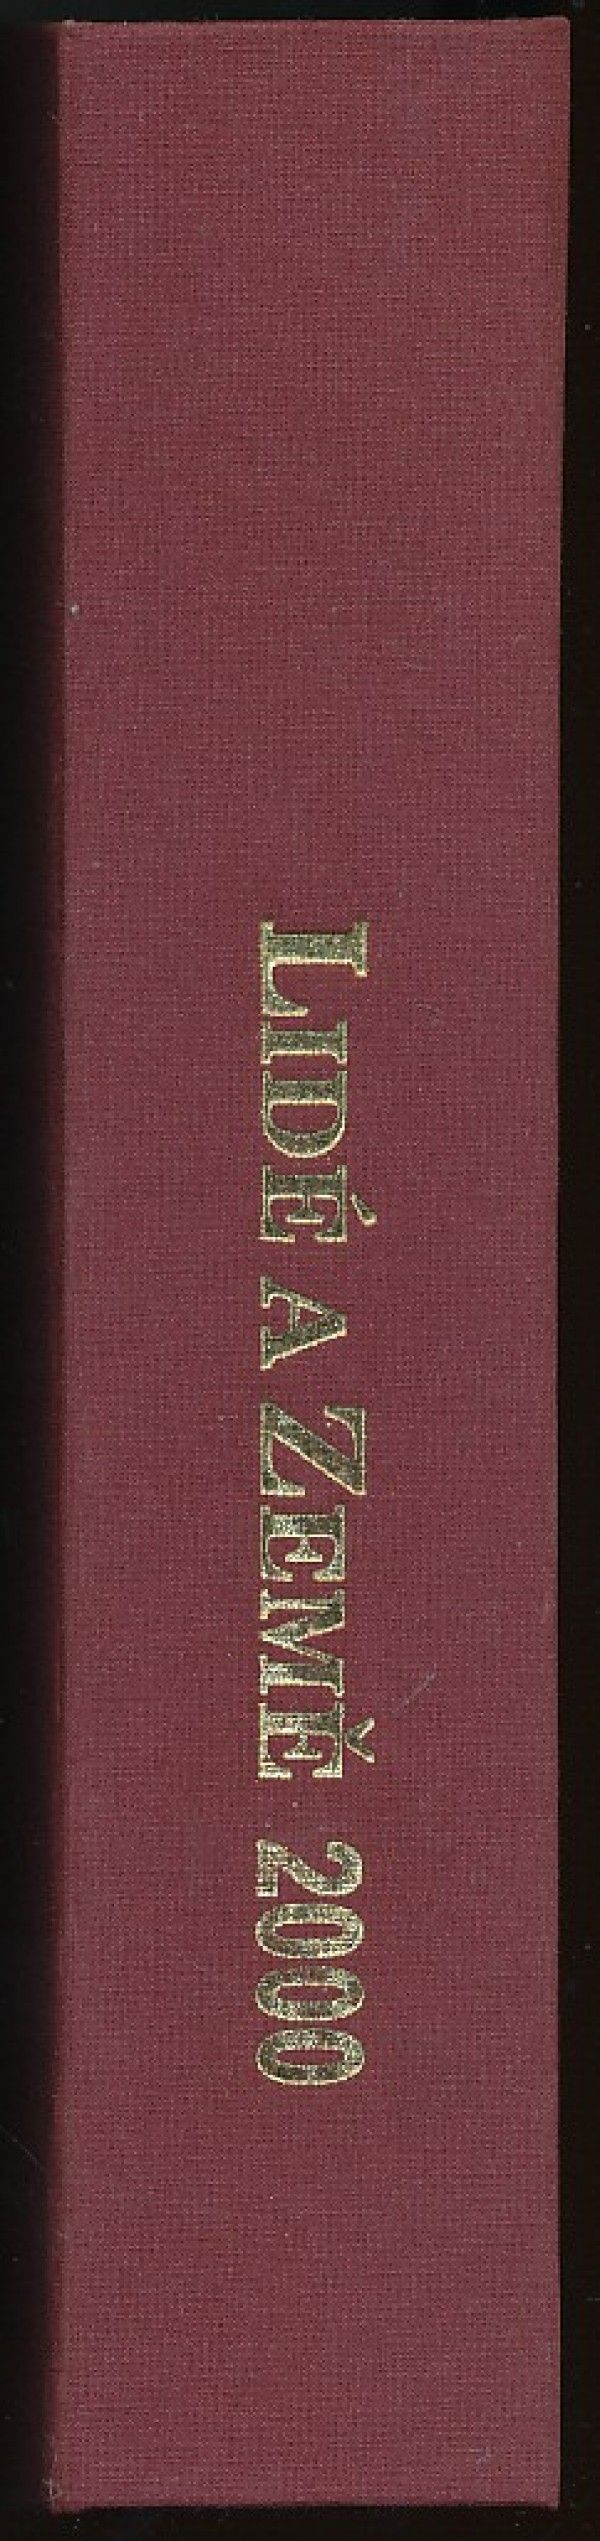 LIDÉ A ZEMĚ 2000 - ROČNÍK 49.